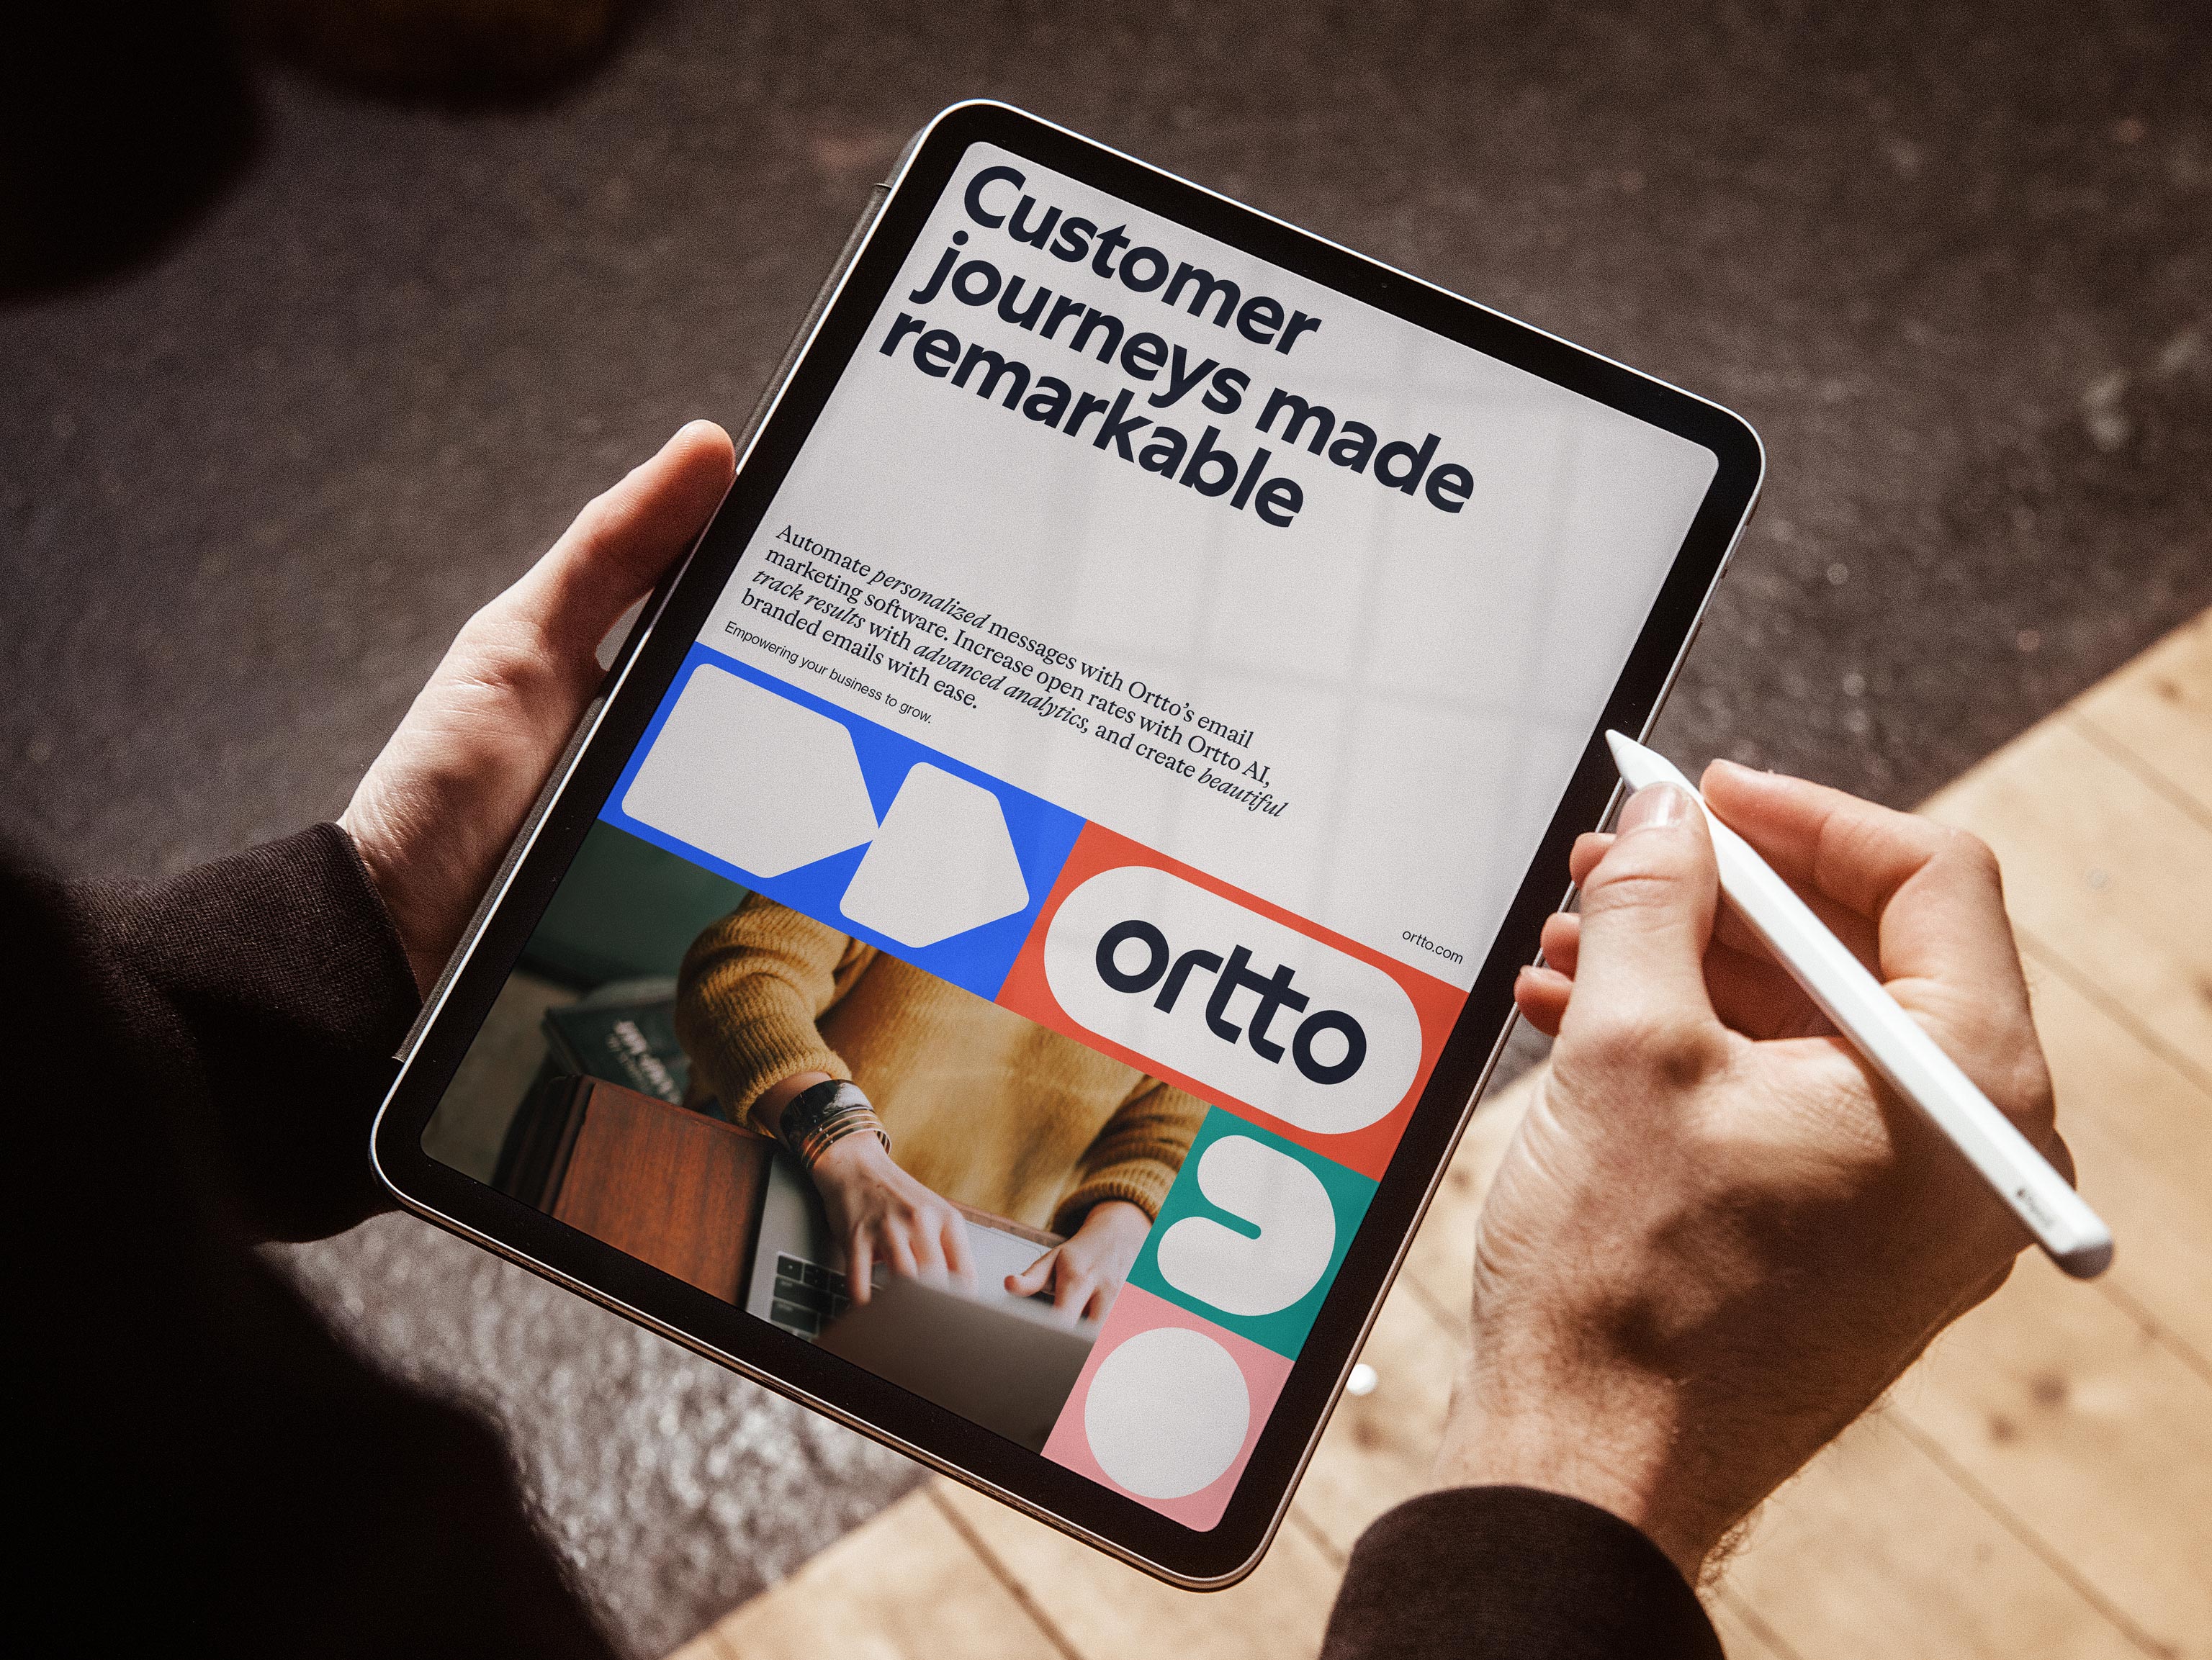 Nieuwe merkidentiteit en website voor automatiserings-, analyse- en klantreisbedrijf Ortto, ontworpen door Christopher Doyle & Co